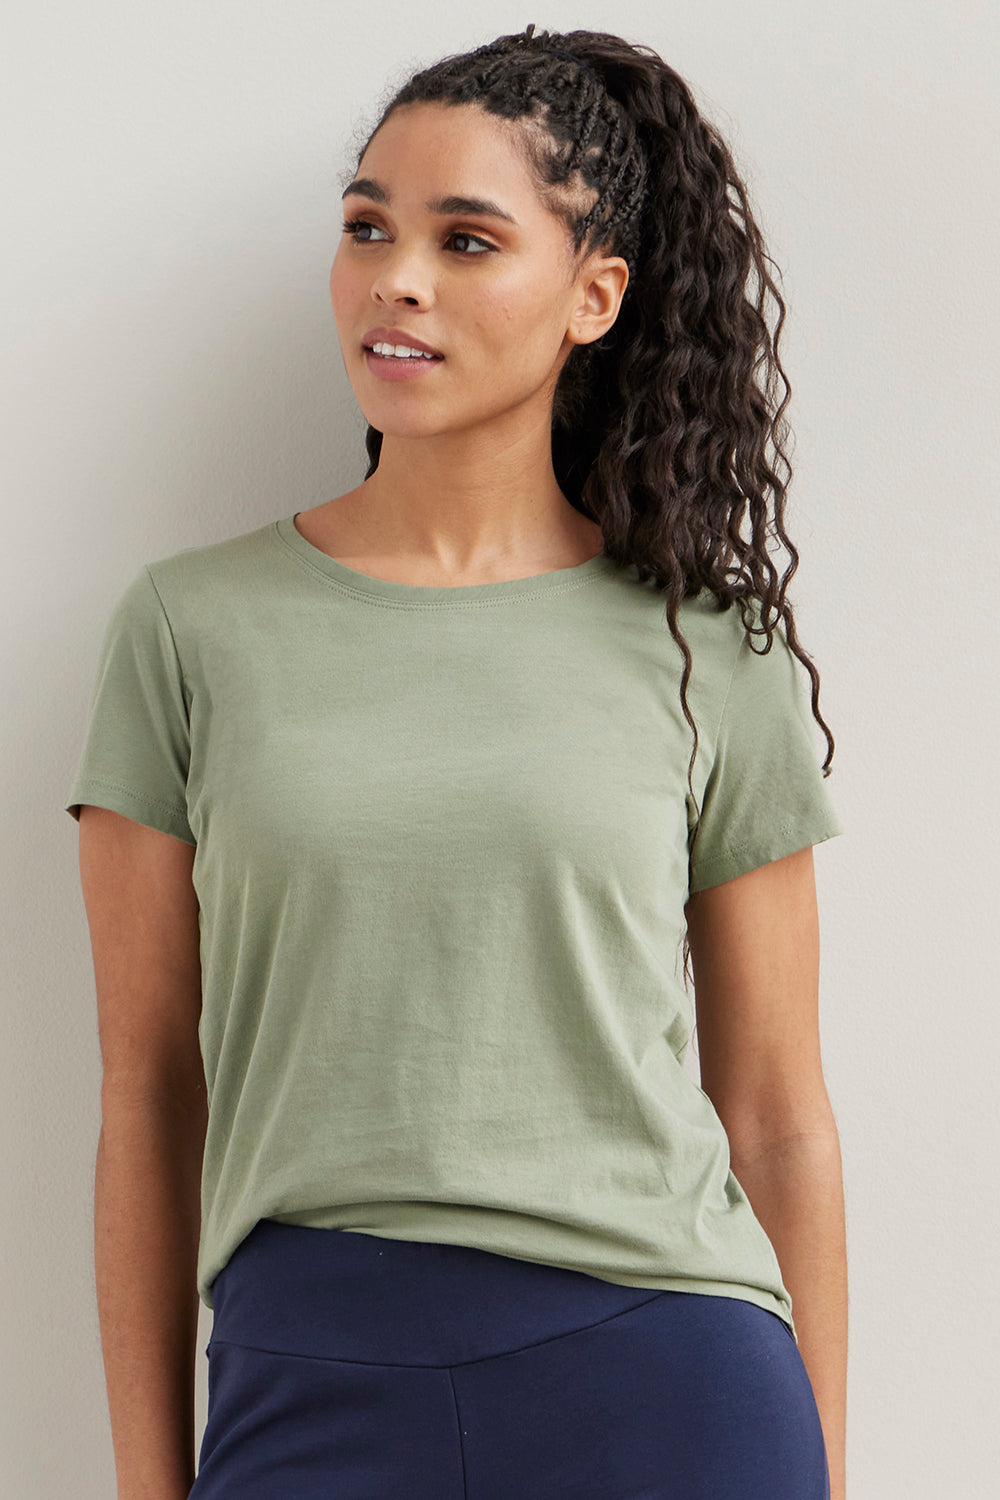 AYA Eco Fashion Organic Pima Cotton T-Shirt for Women's - Made in Peru